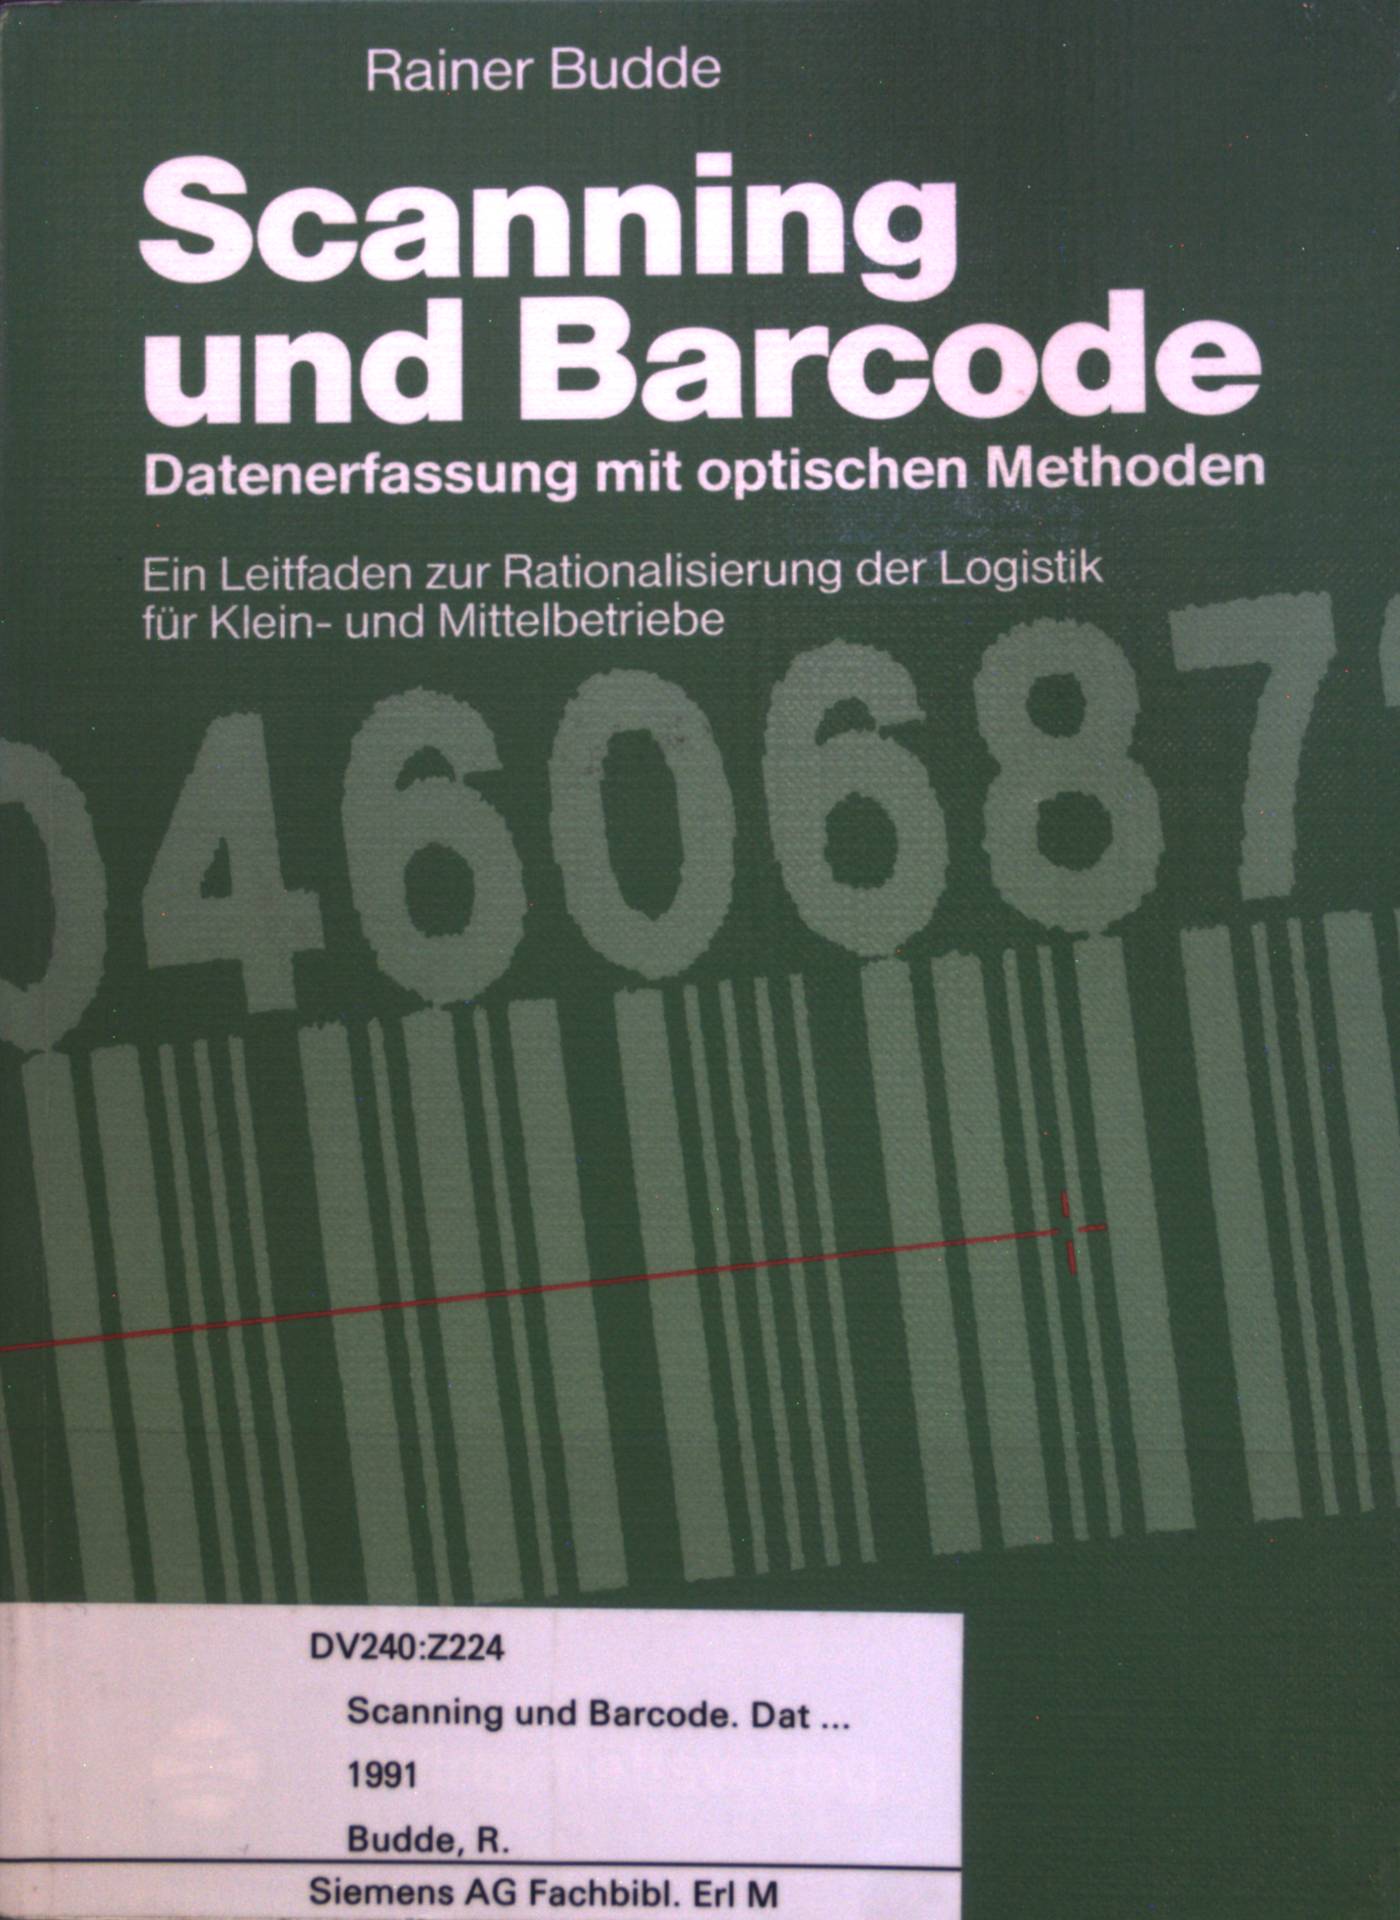 Scanning und Barcode. Datenerfassung mit optischen Methoden. Ein Leitfaden zur Rationalisierung der Logistik für den Klein- und Mittelbetrieb